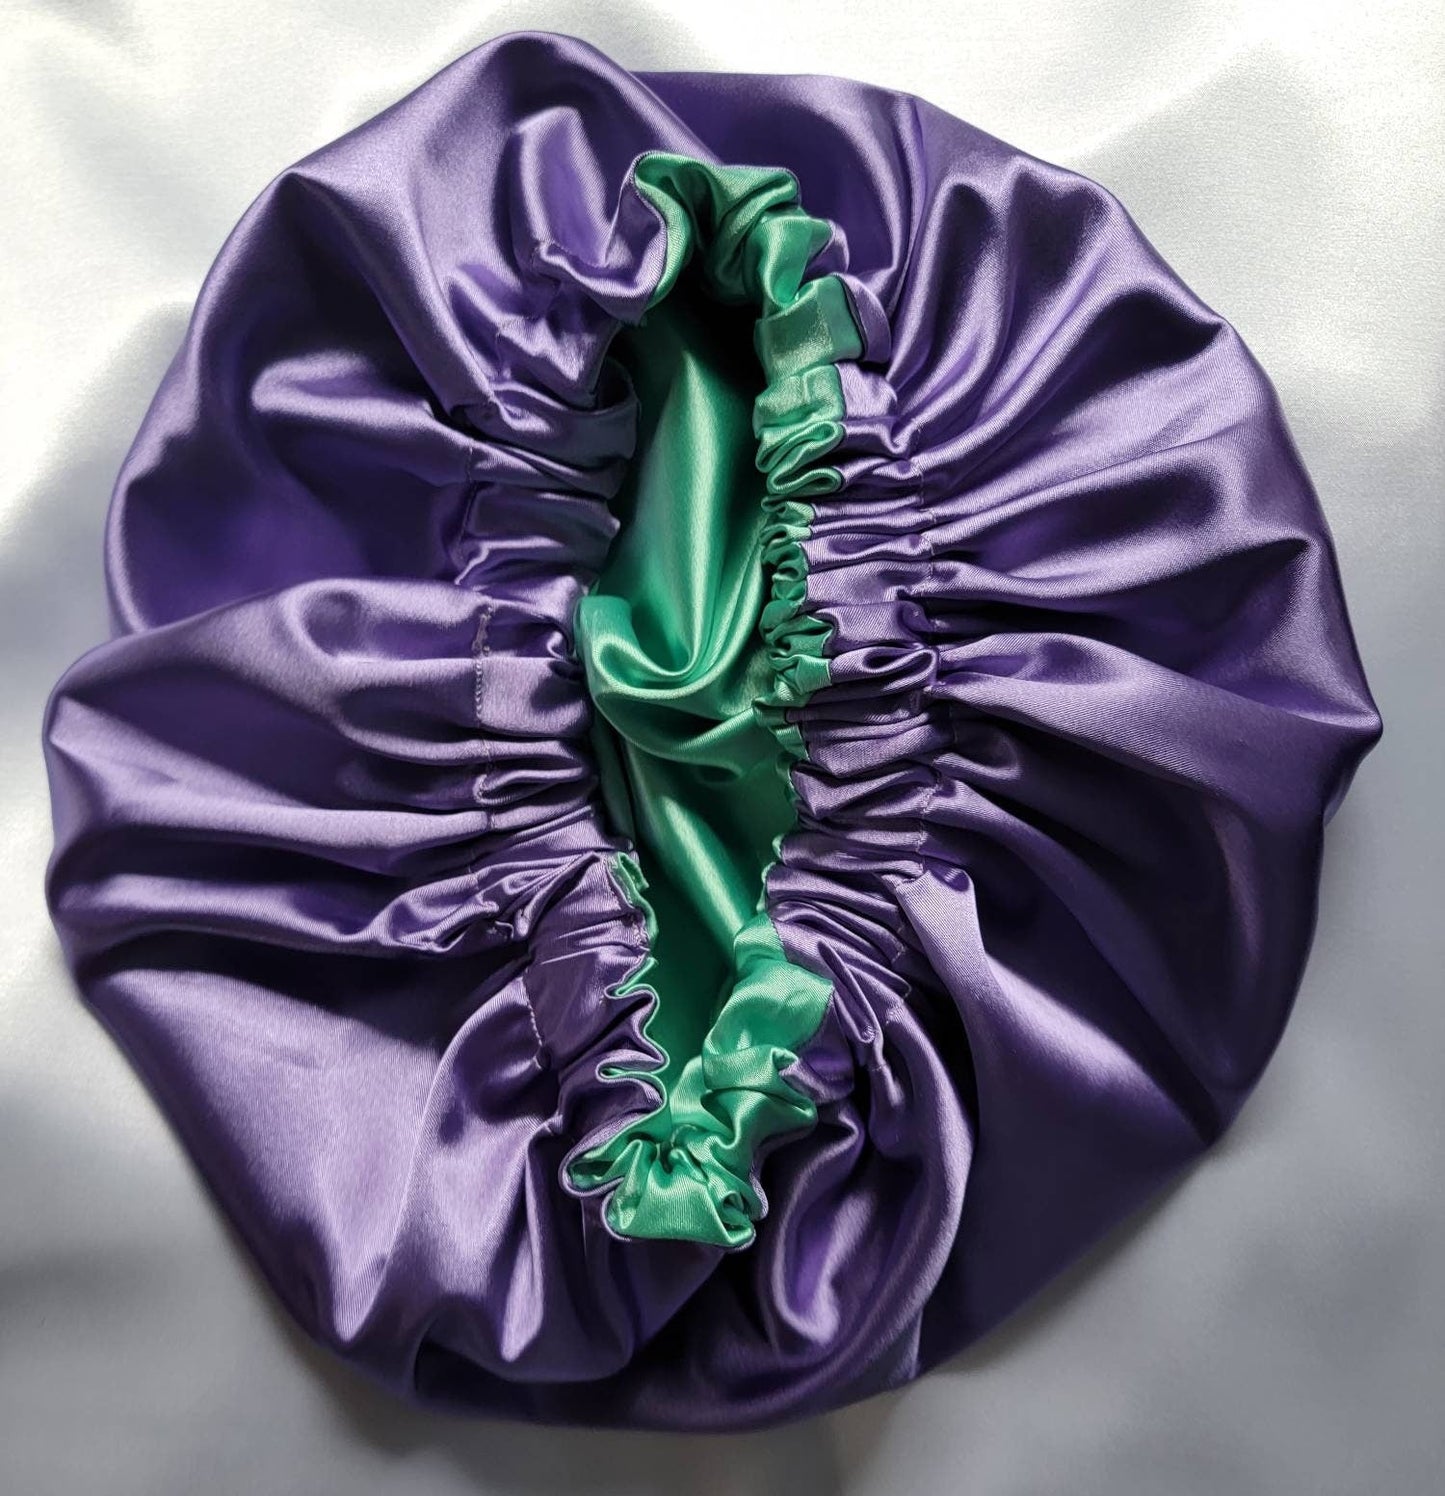 Aqua Green/Purple Charmeuse Satin Hair Bonnet